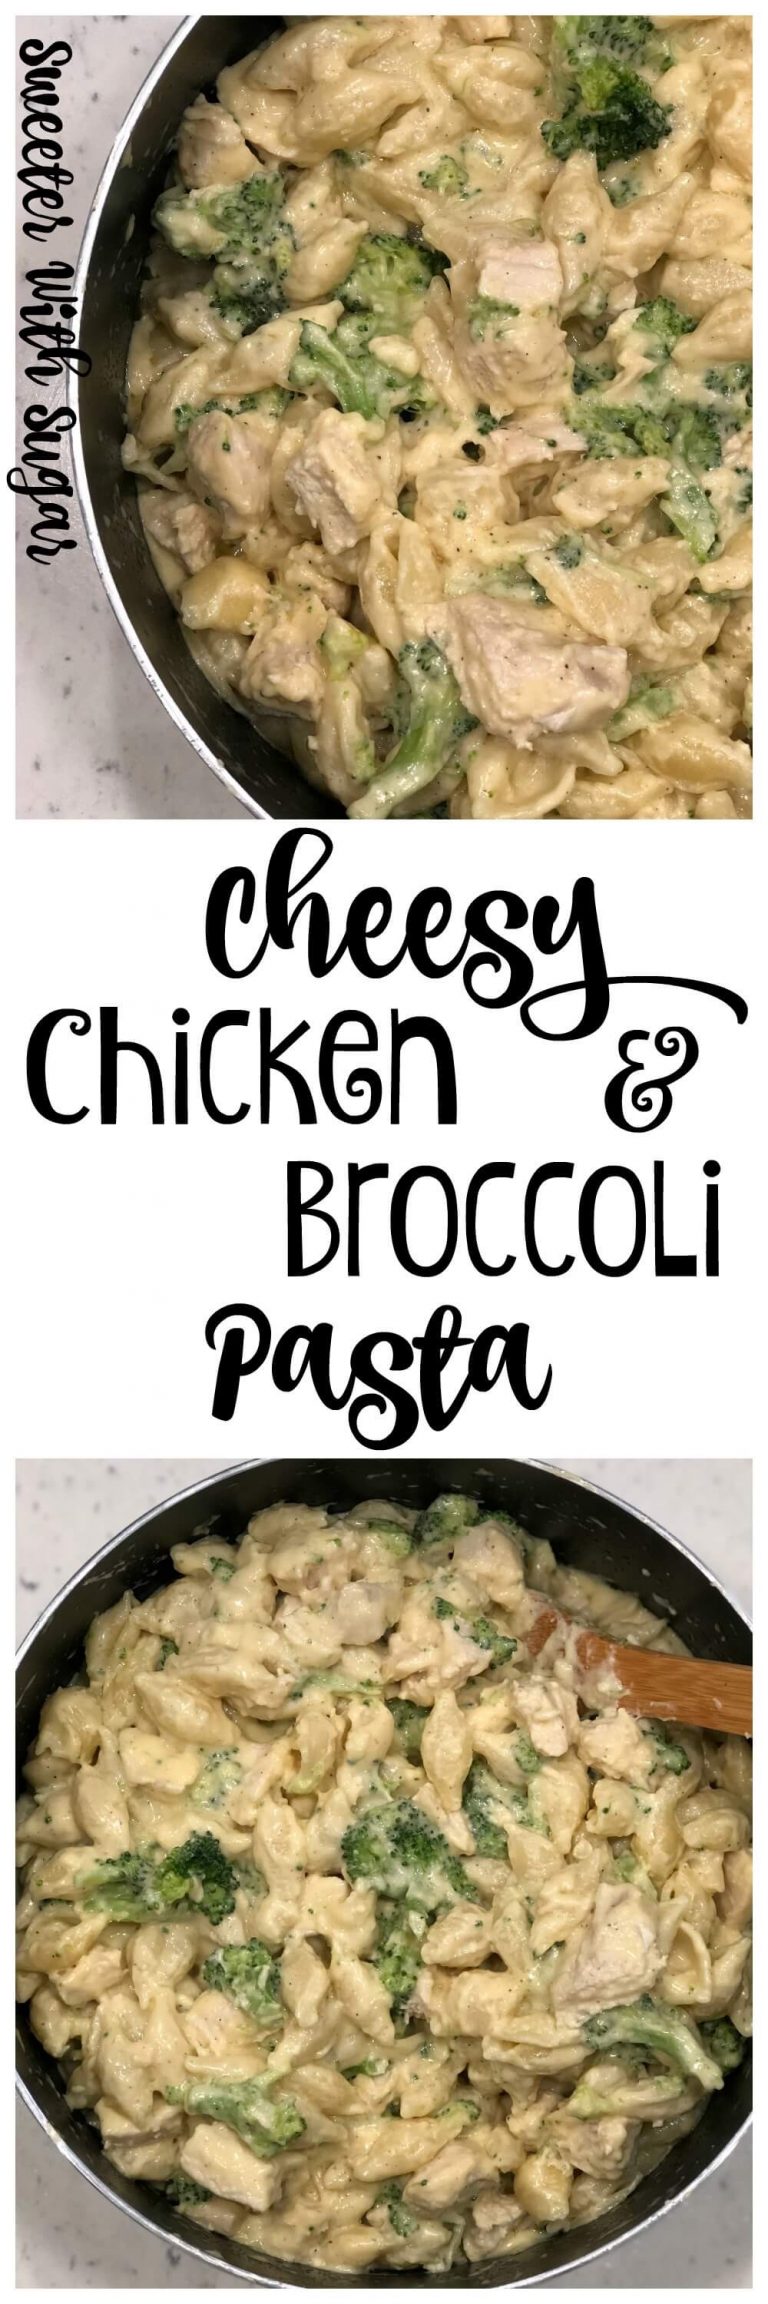 Cheesy Chicken and Broccoli Pasta